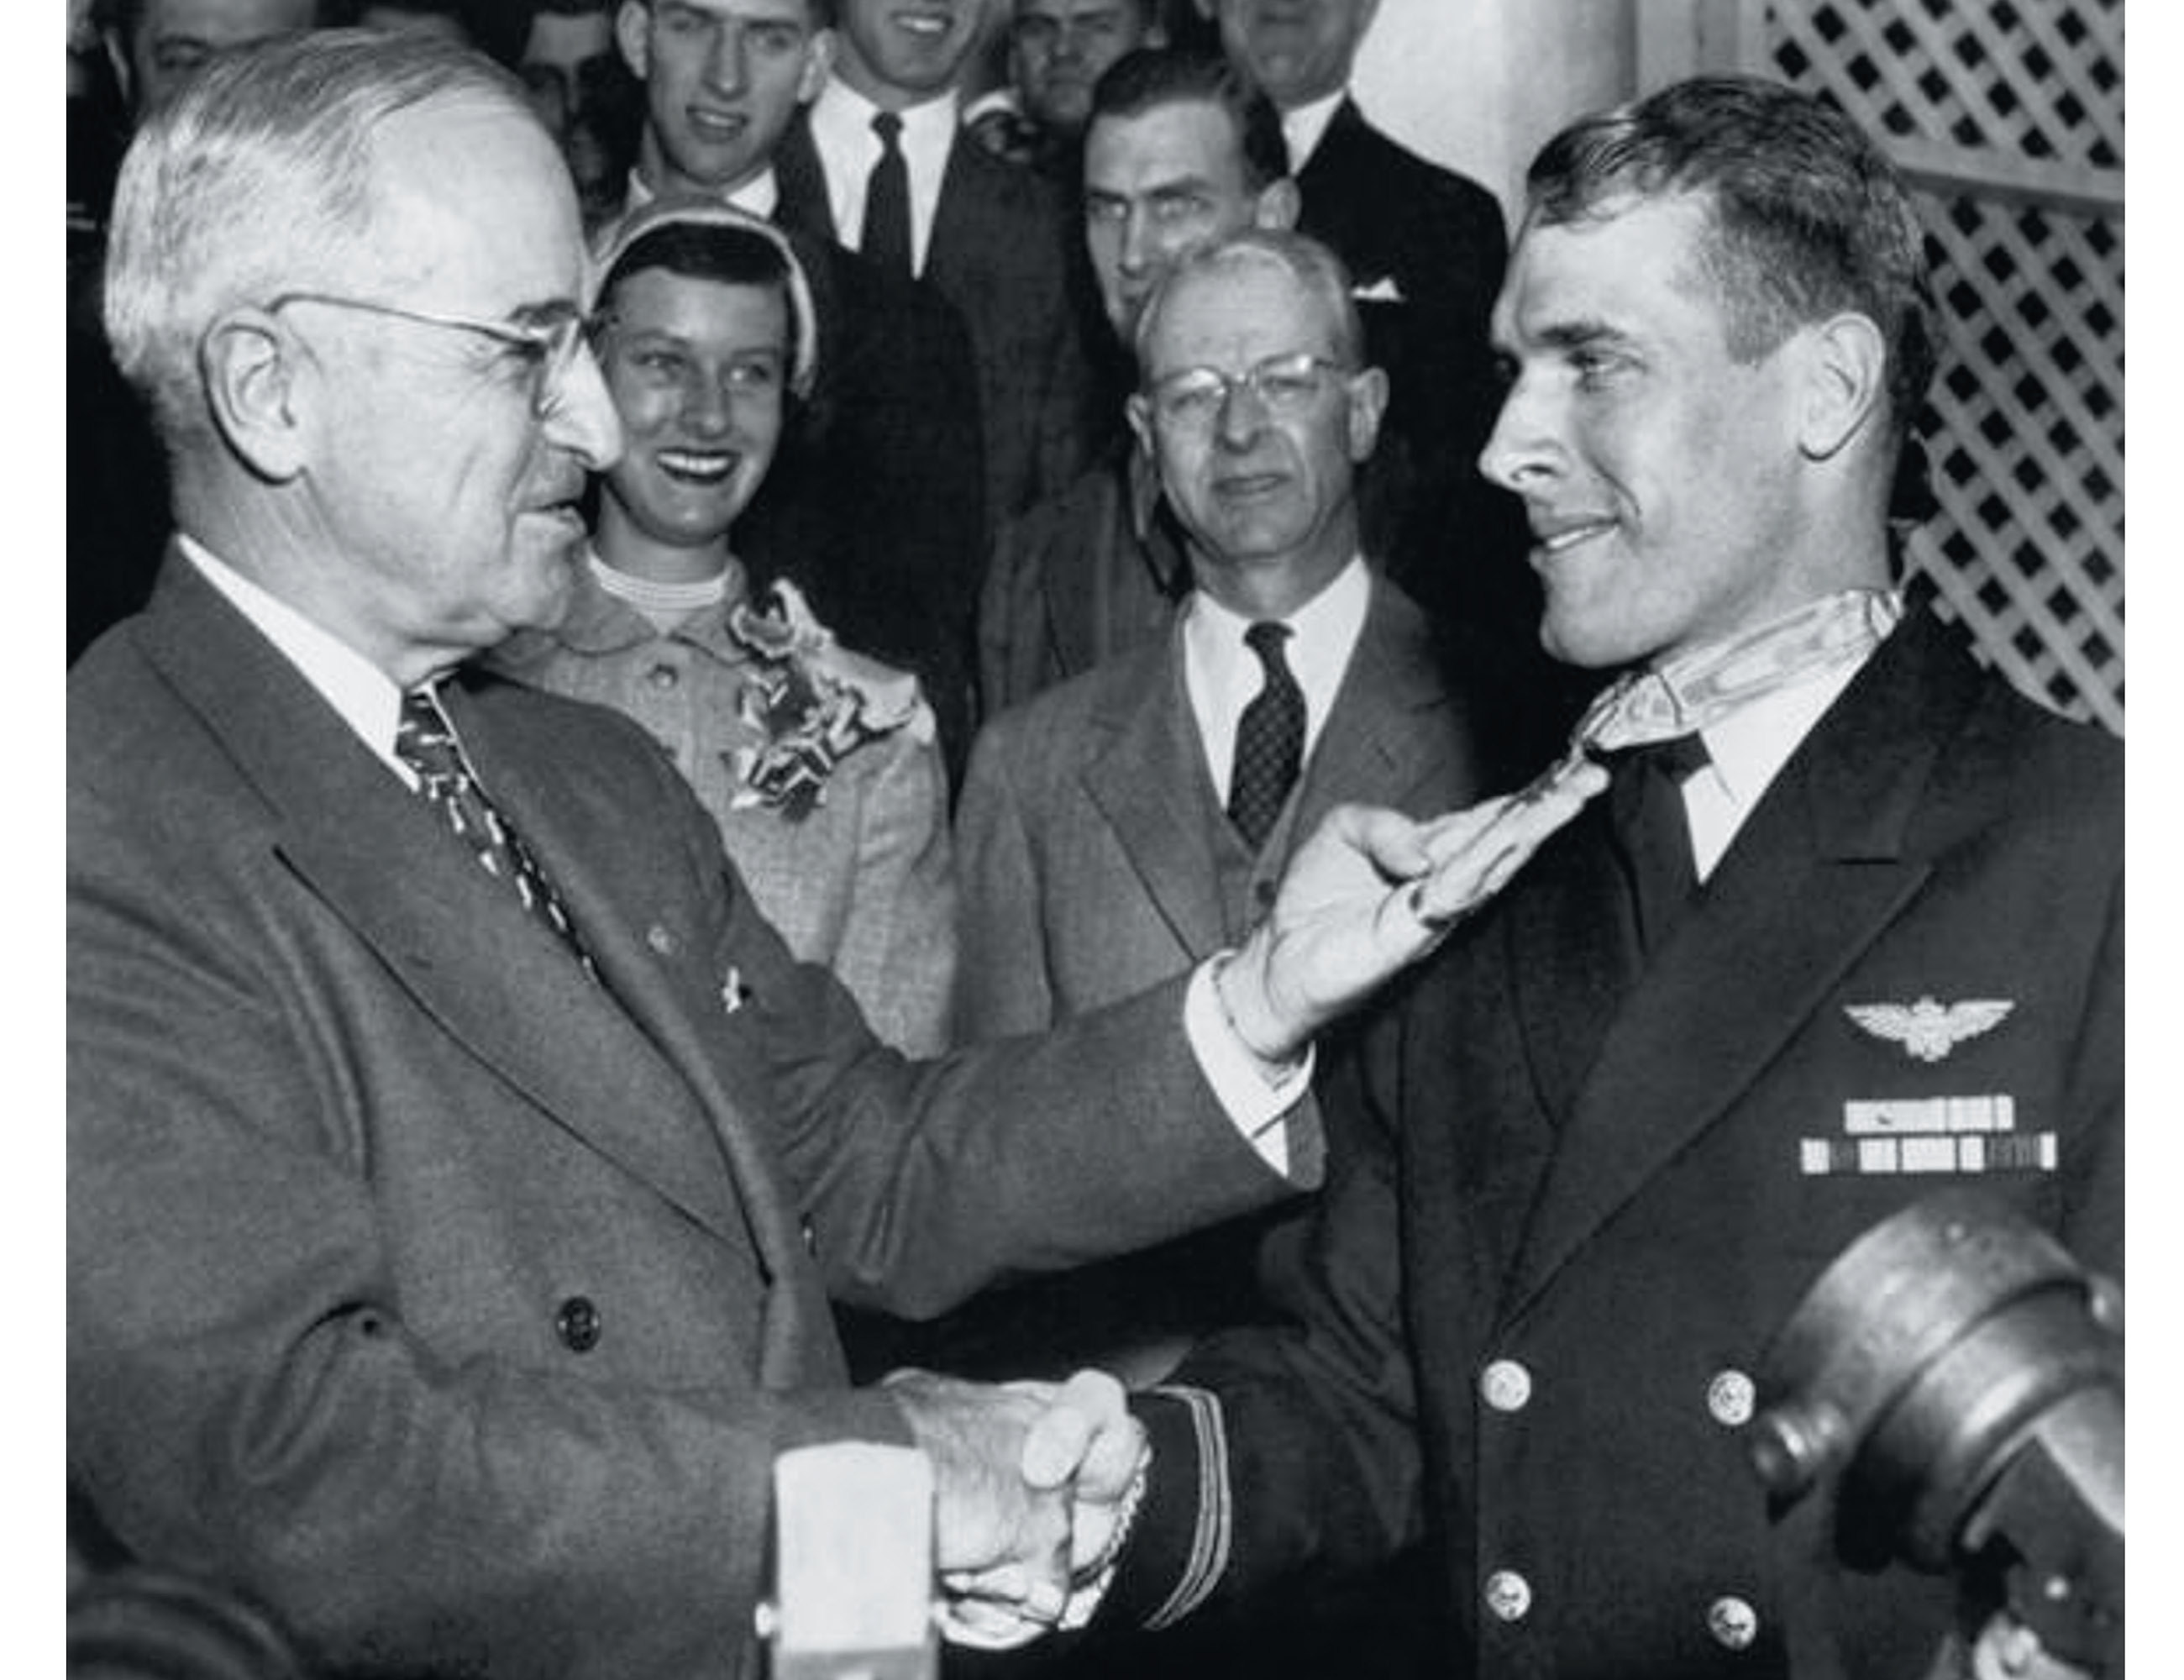 President Harry S. Truman awards Hudner Jr. the Medal of Honor on April 13, 1951.